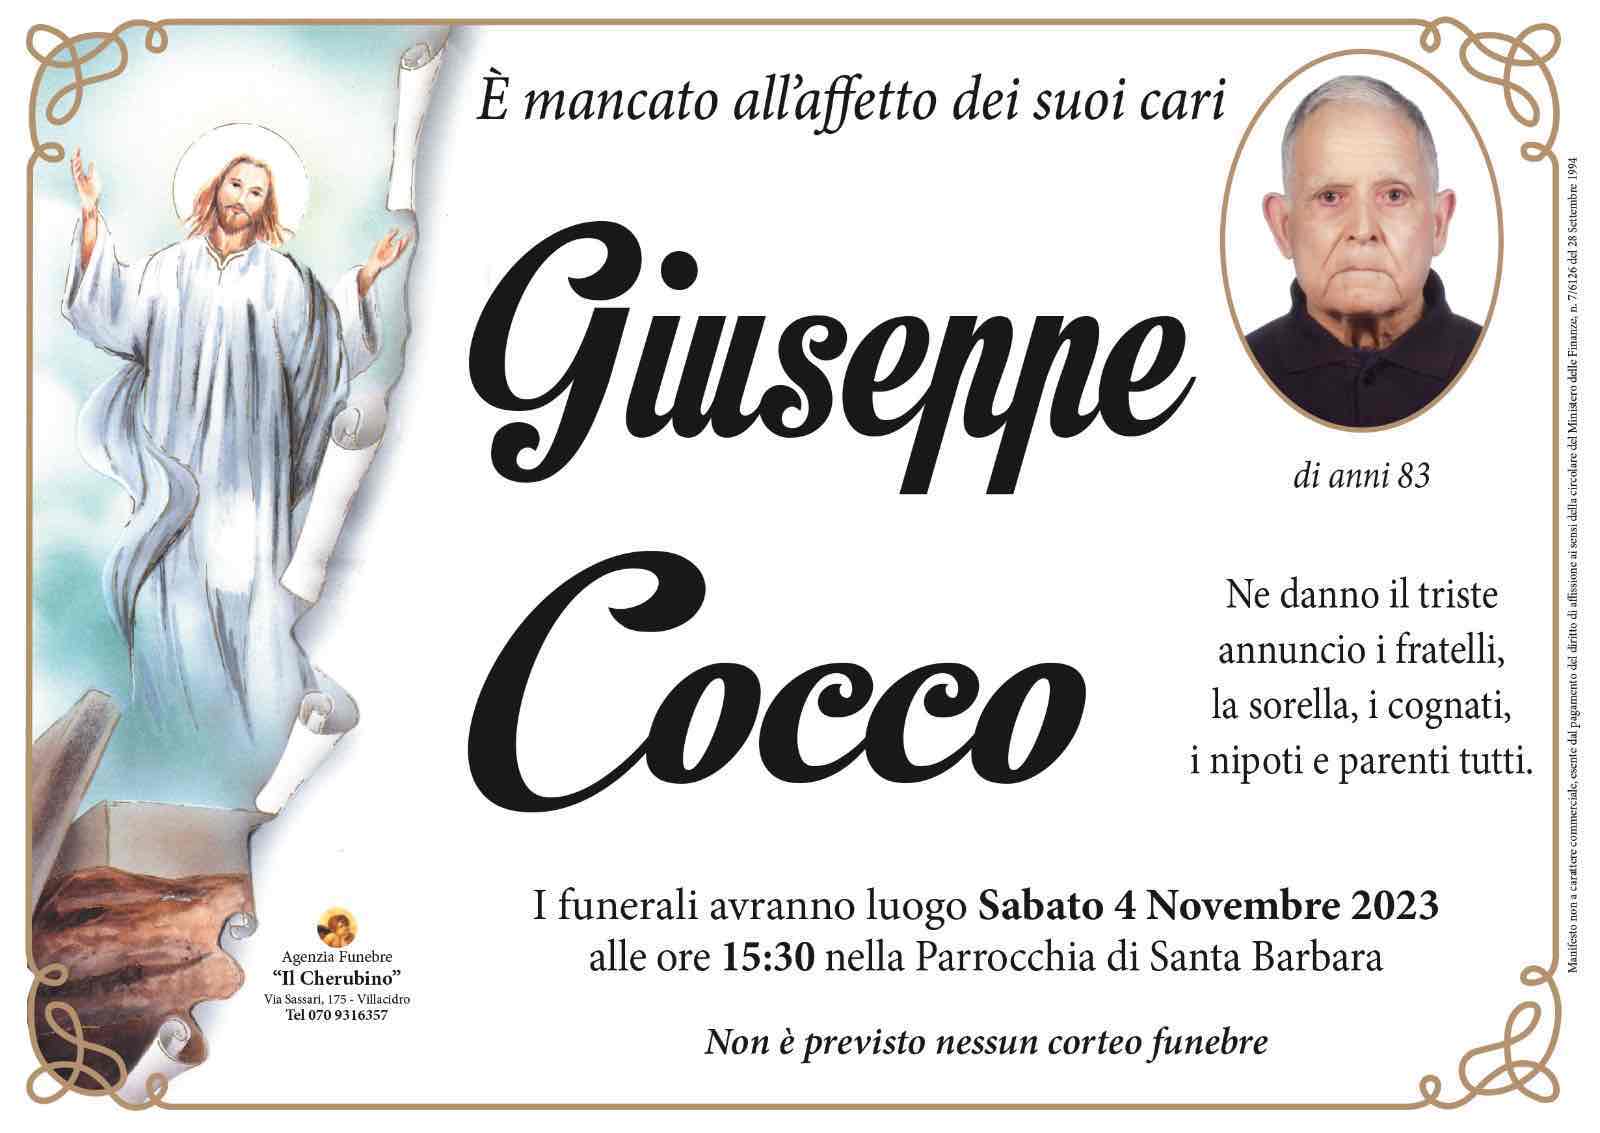 Giuseppe Cocco